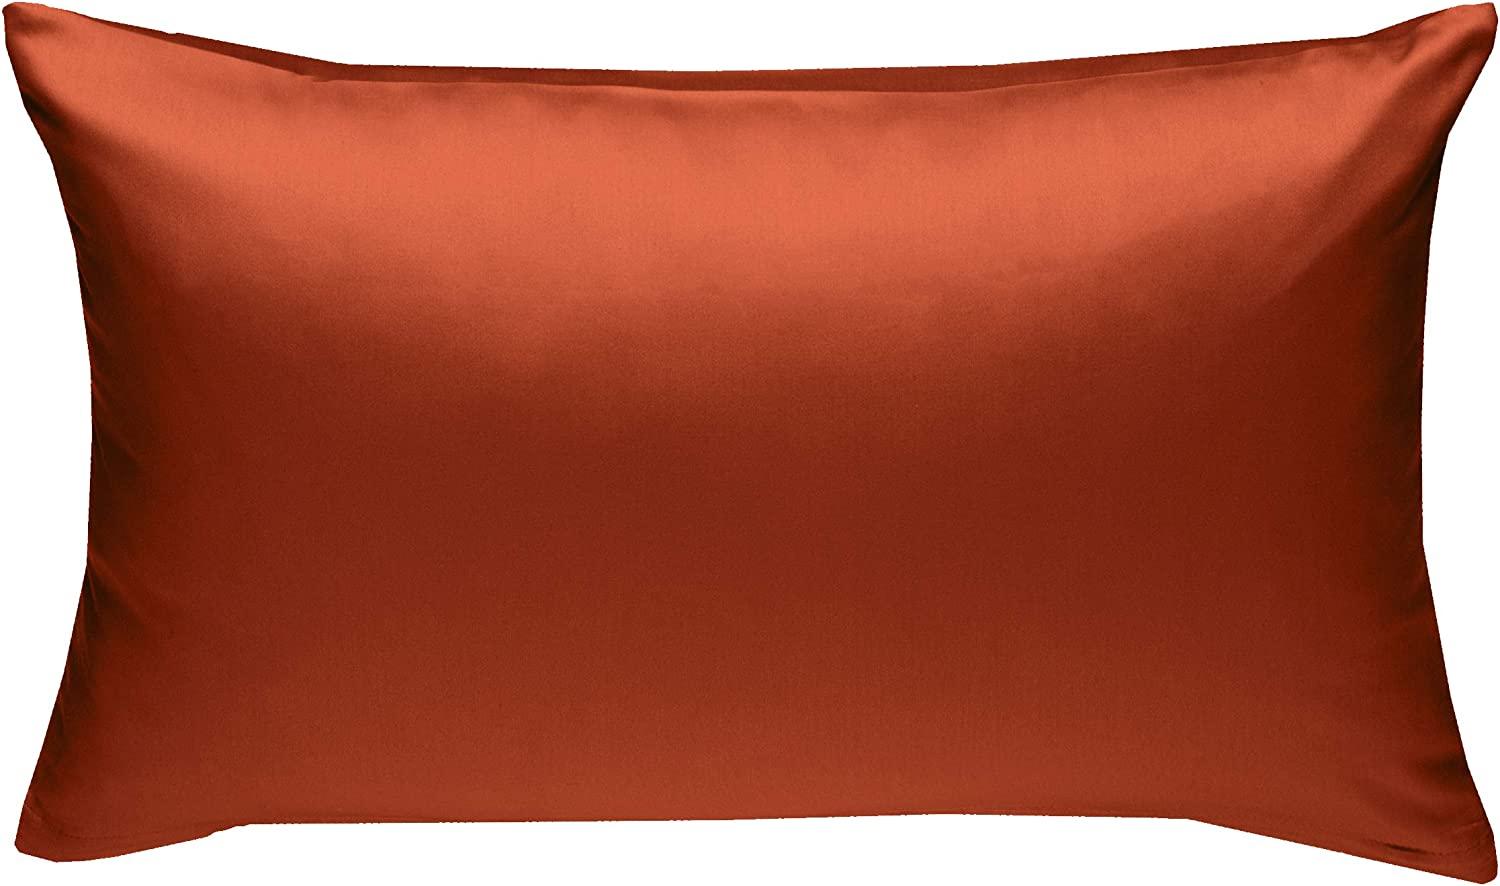 Bettwaesche-mit-Stil Mako-Satin / Baumwollsatin Bettwäsche uni / einfarbig orange Kissenbezug 50x70 cm Bild 1